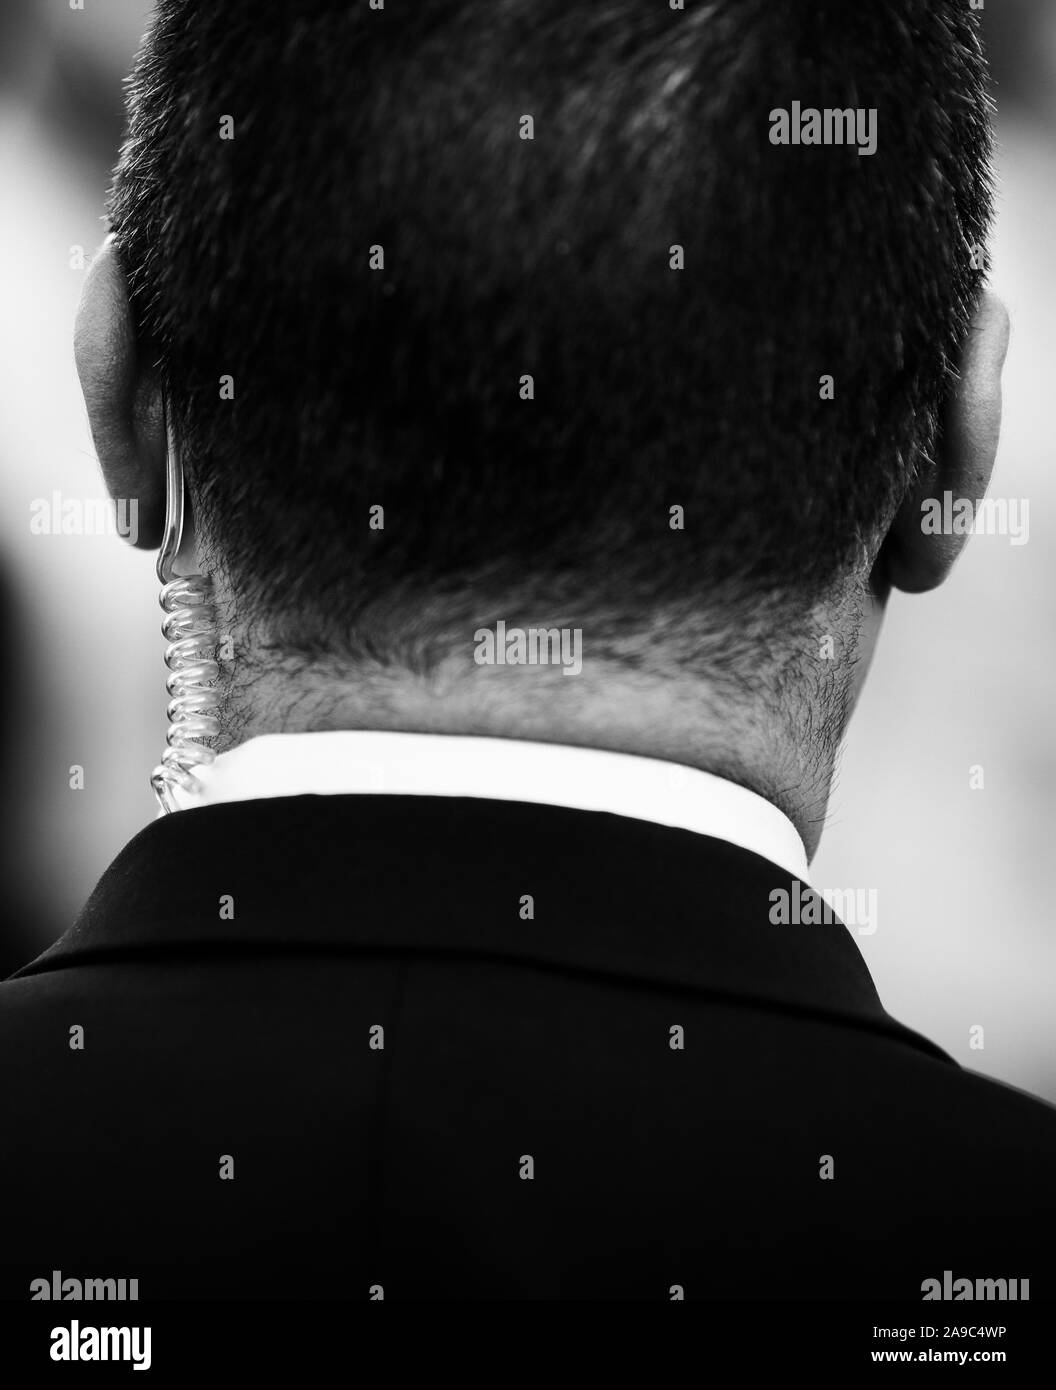 Flache Tiefenschärfe (selektive Fokus) Bild mit den gewundenen Schlauch Hörer eine Schutz- und Wachdienst (SPP, rumänische Version der US-Geheimdienste Se Stockfoto